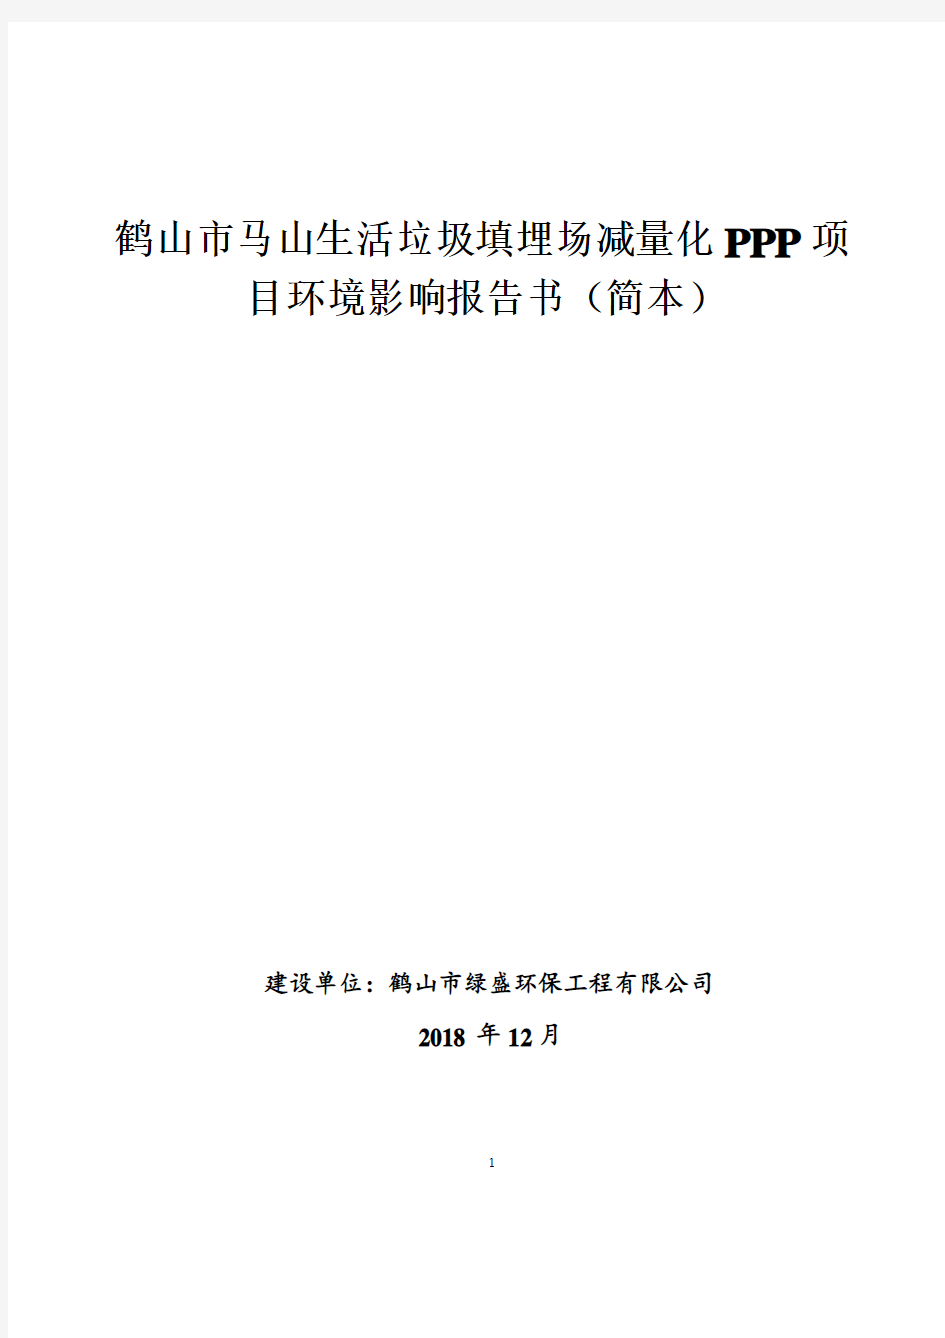 鹤山市马山生活垃圾填埋场减量化PPP项目环境影响报告书